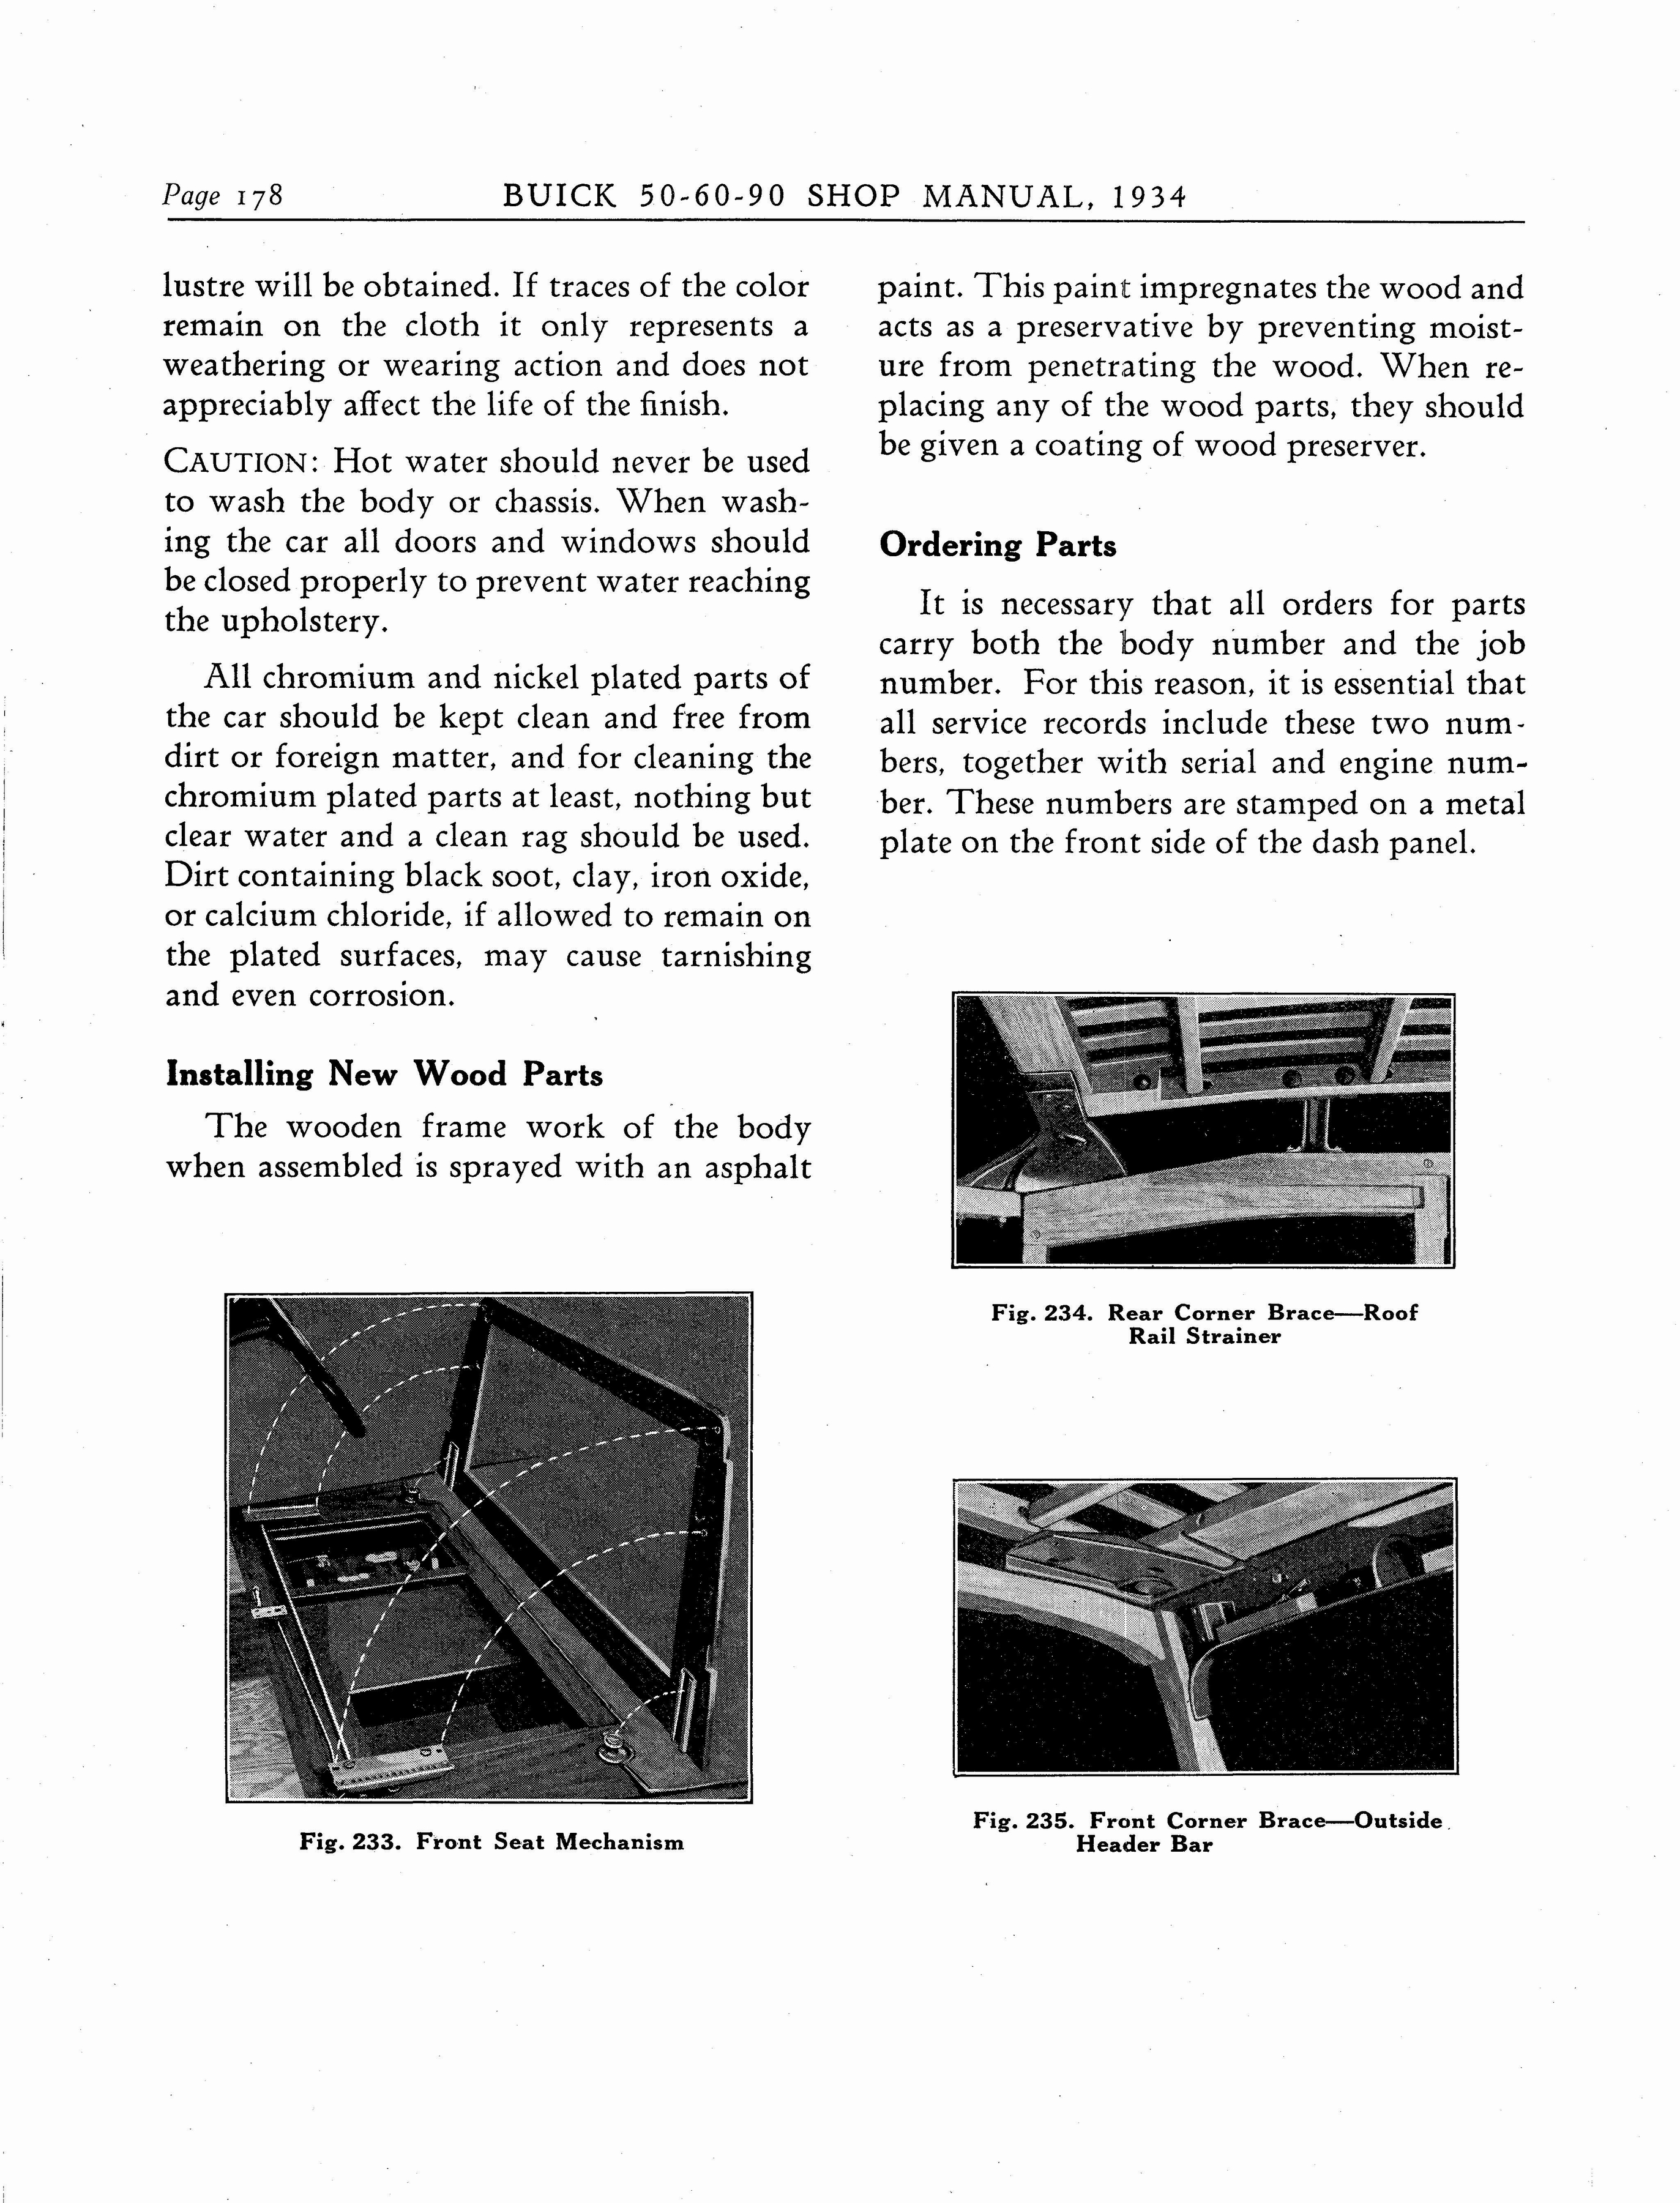 n_1934 Buick Series 50-60-90 Shop Manual_Page_179.jpg